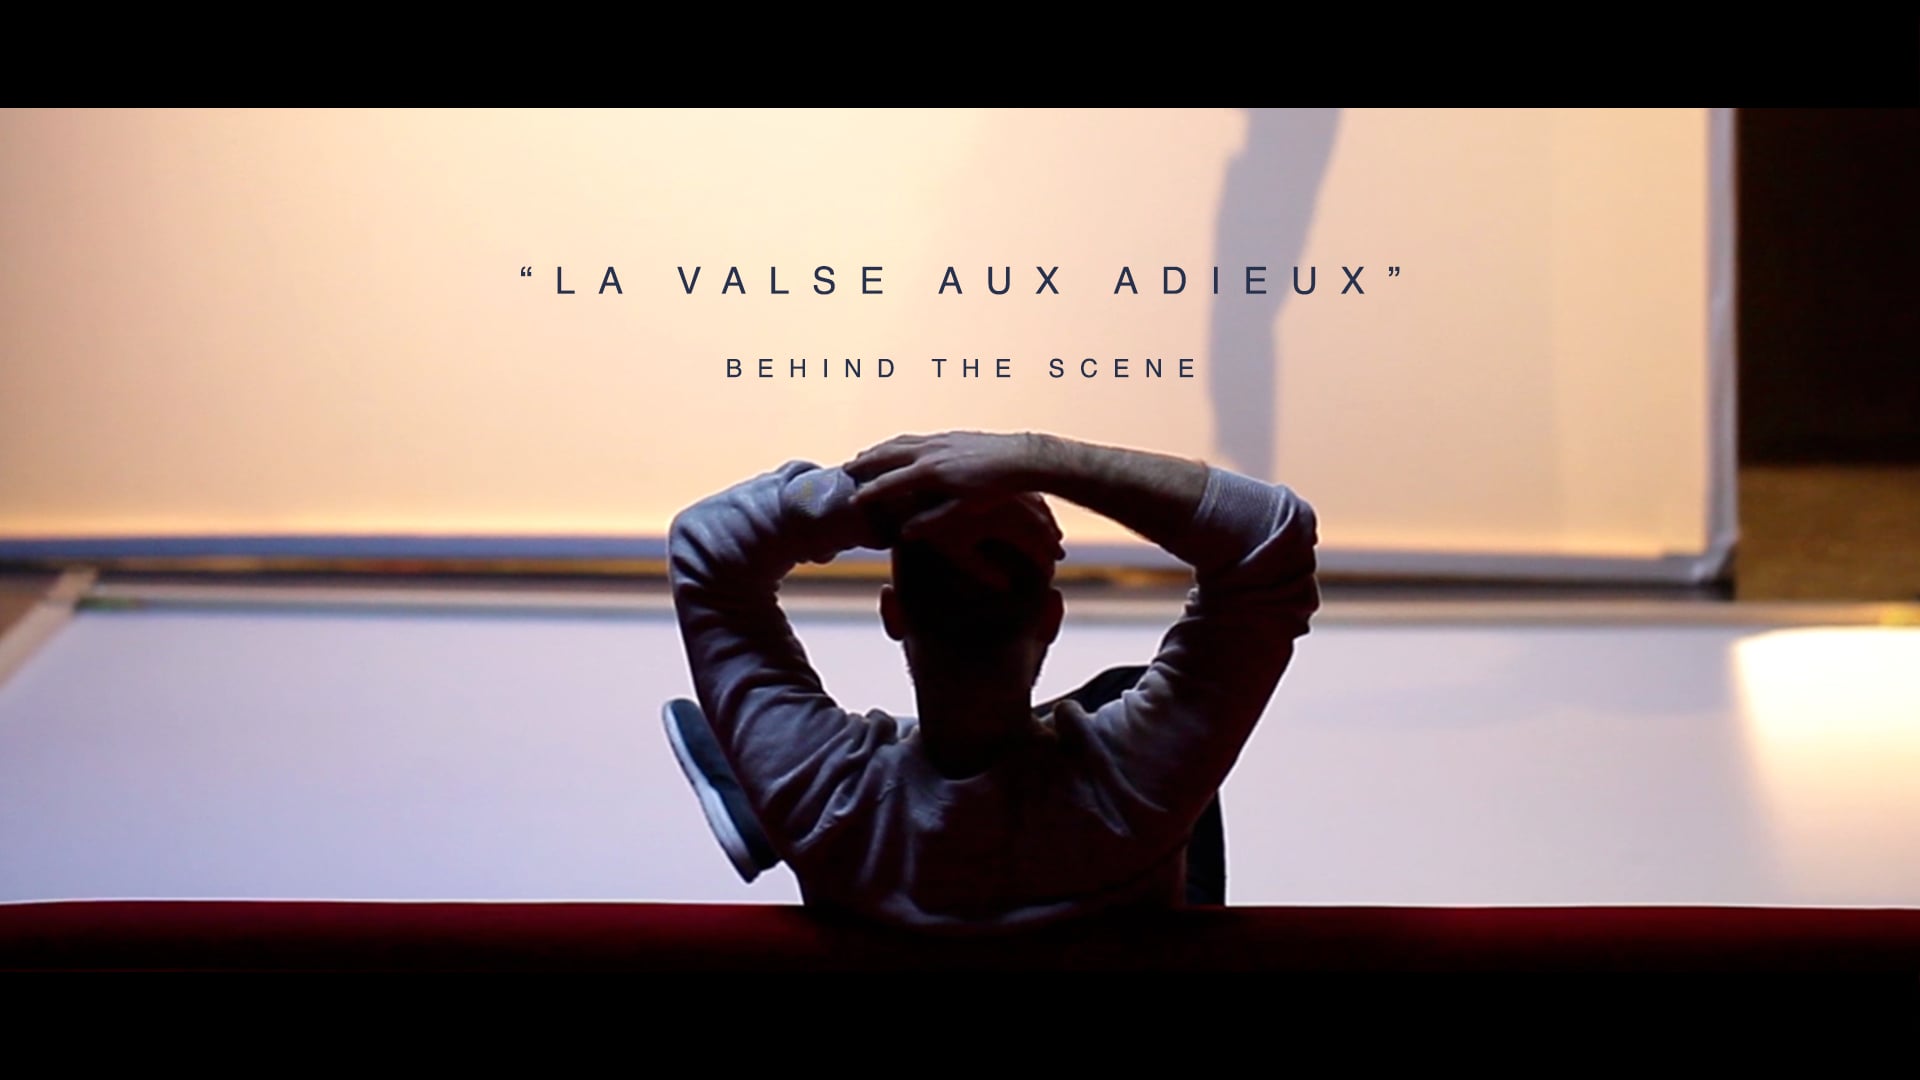 LA VALSE AUX ADIEUX - Behind The Scene